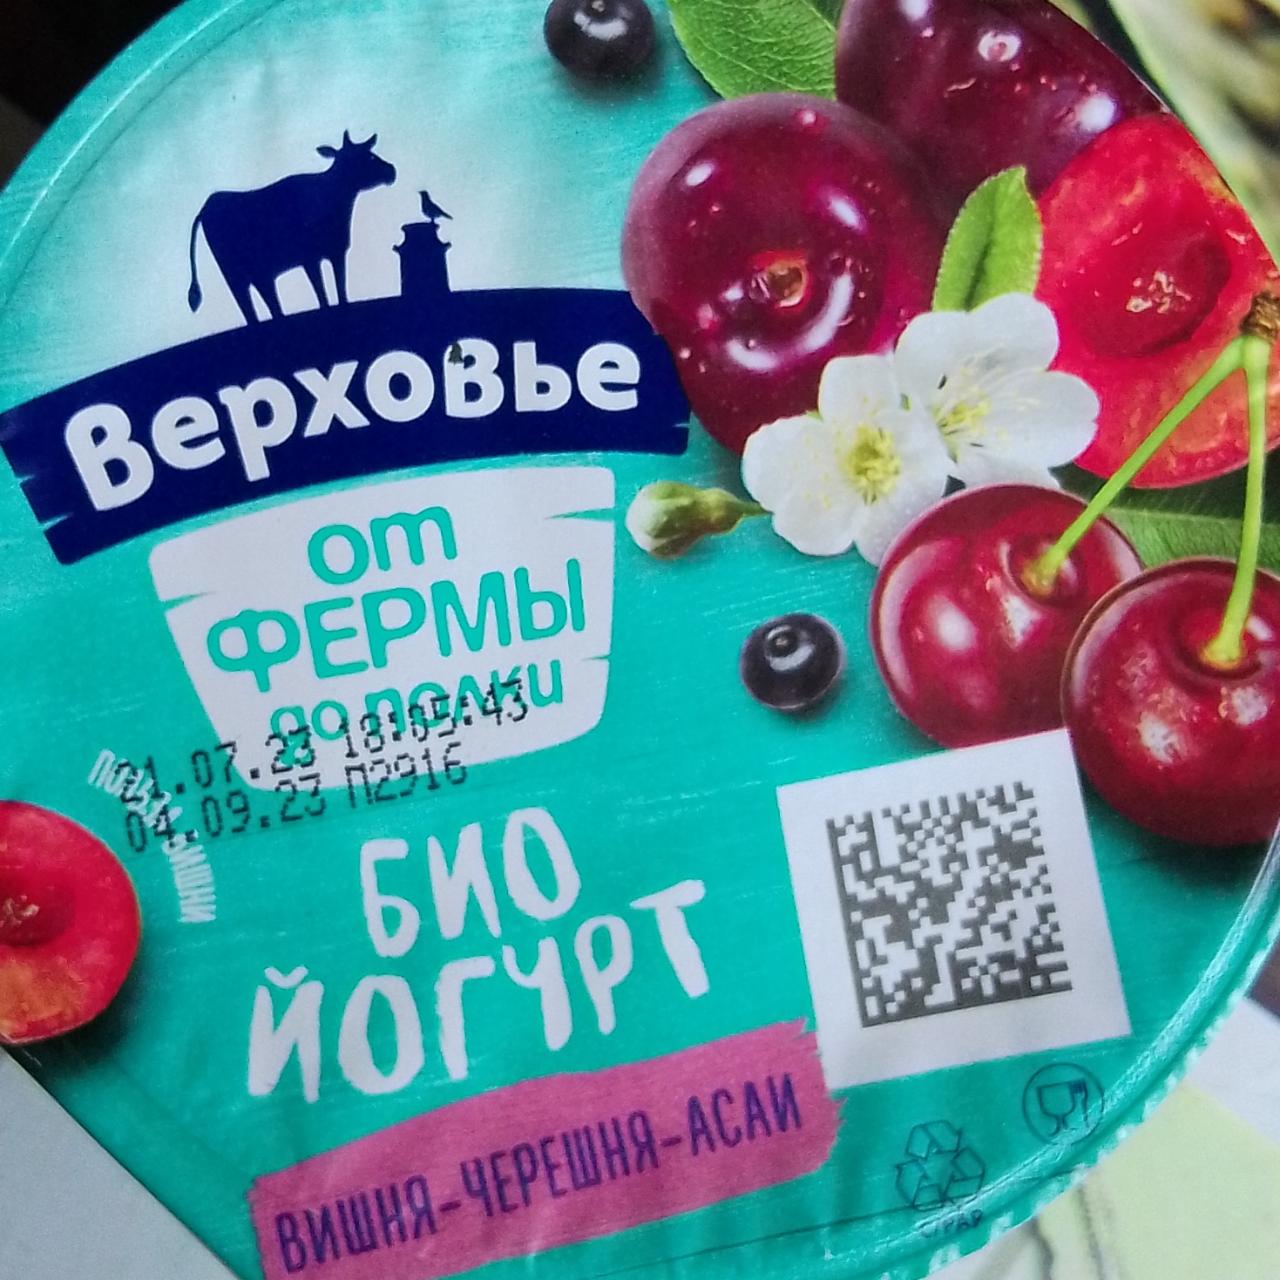 Фото - Био-йогурт вишня-черешня-асаи Верховье